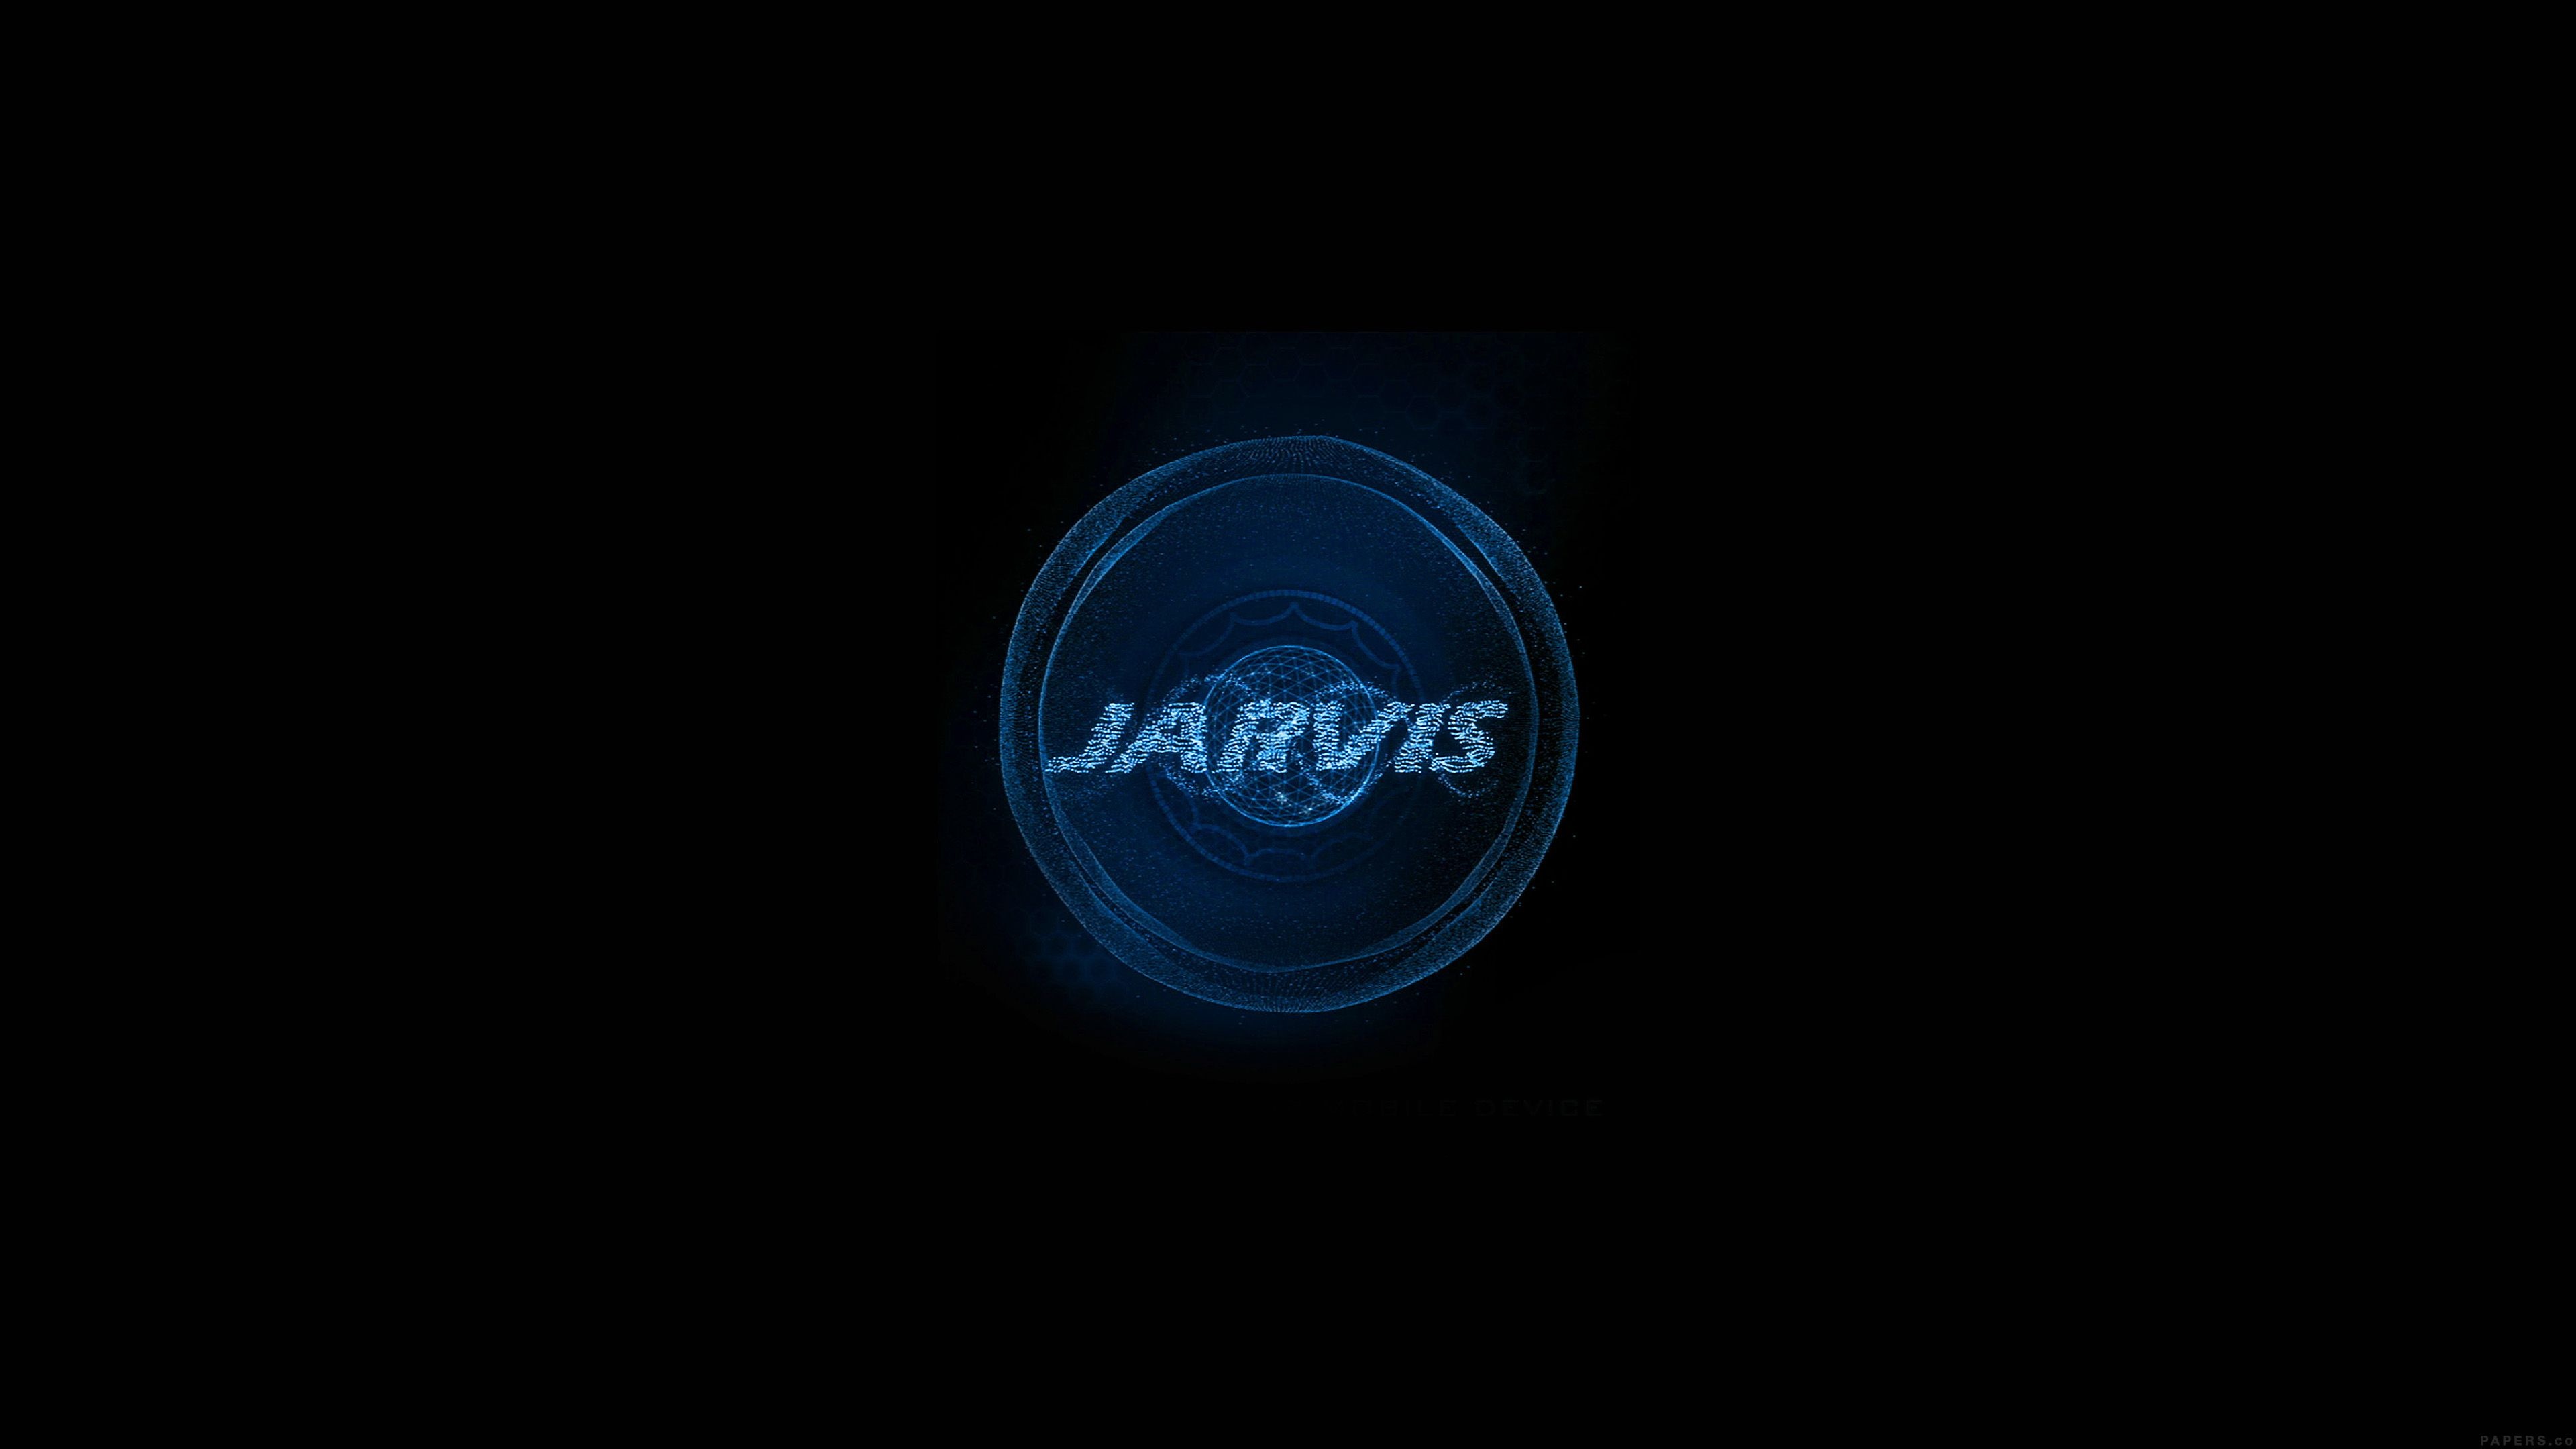 Jarvis, 4K wallpapers, Backgrounds, Top Free, 3840x2160 4K Desktop